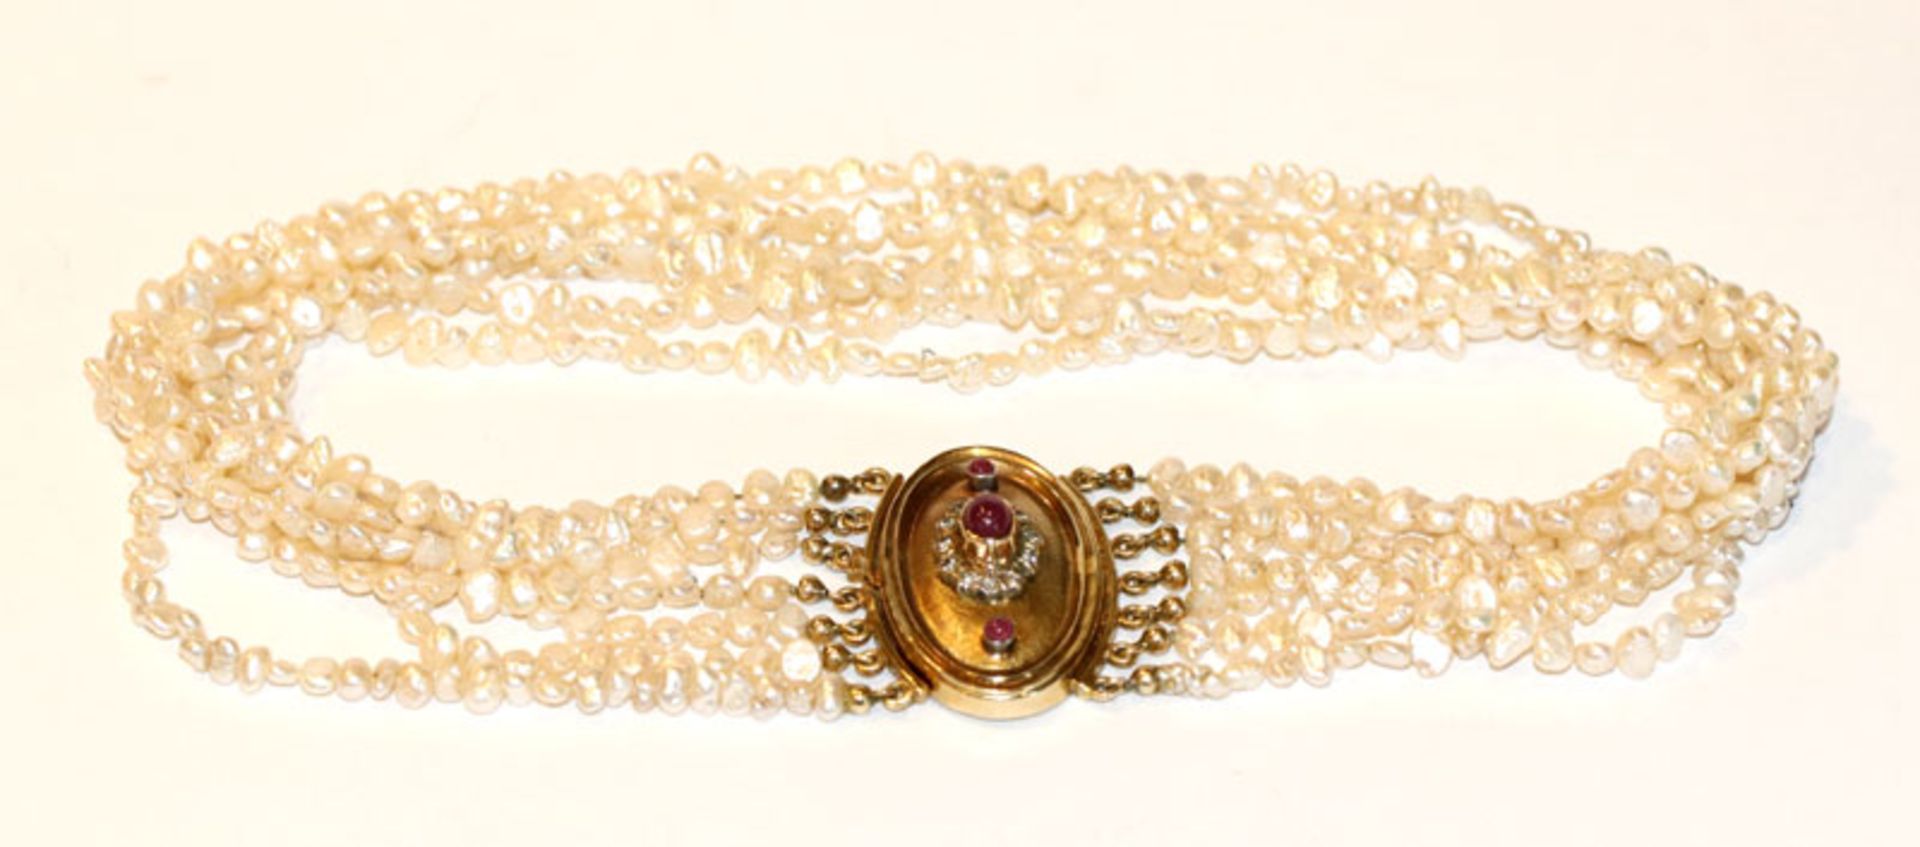 Süßwasser Perlen Kropfband, 7-reihig mit 14 k Gelbgold Schließe, besetzt mit 3 Rubinen und 12